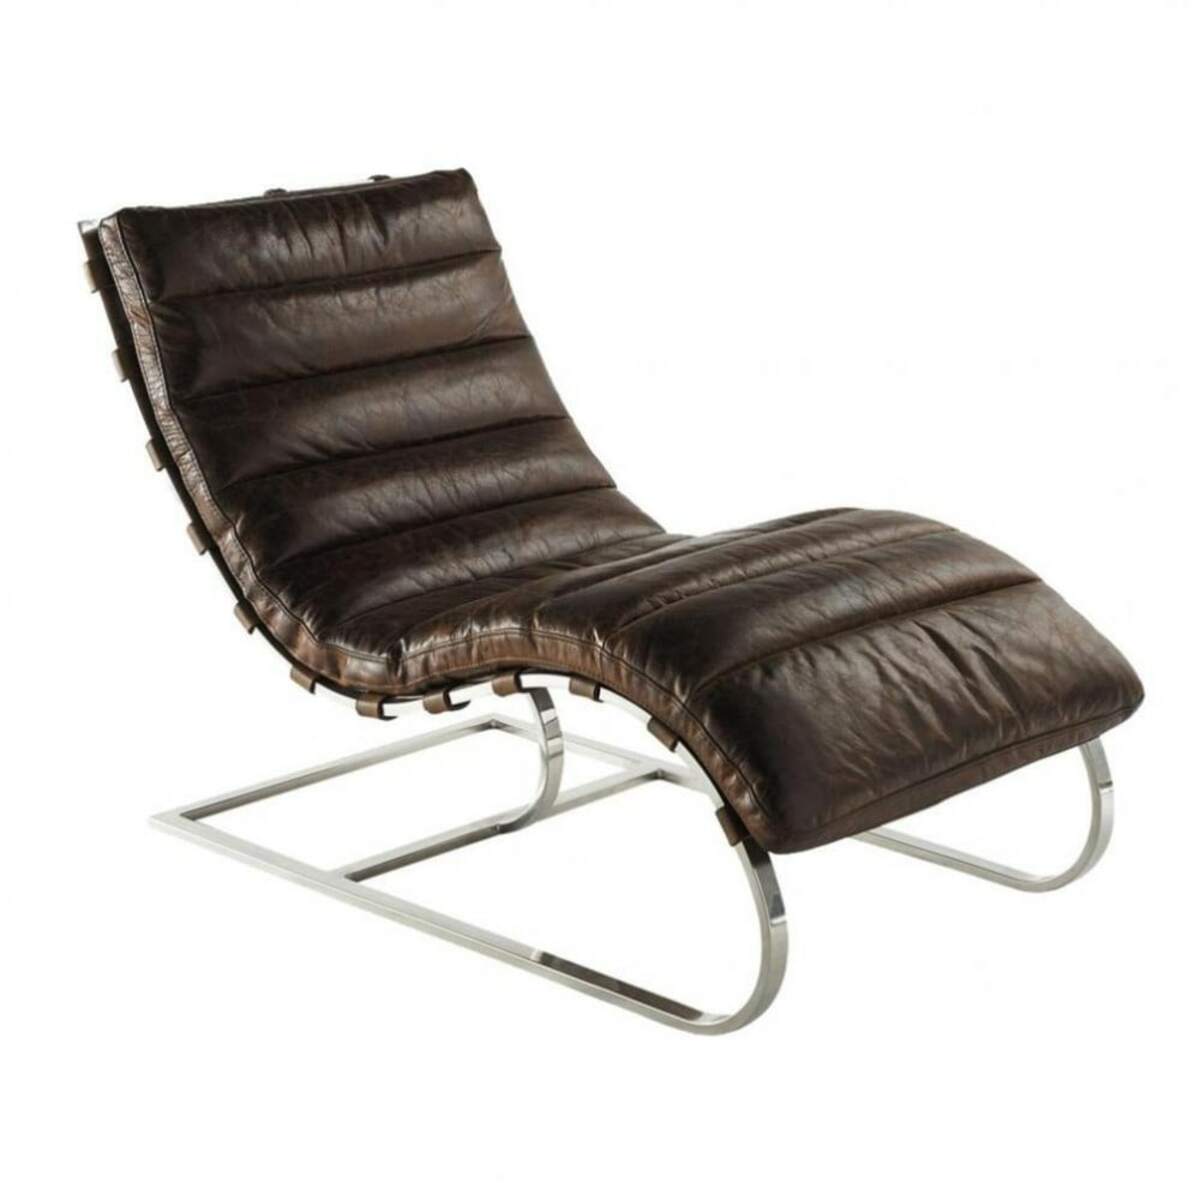 Chaise longue de cuero marrón